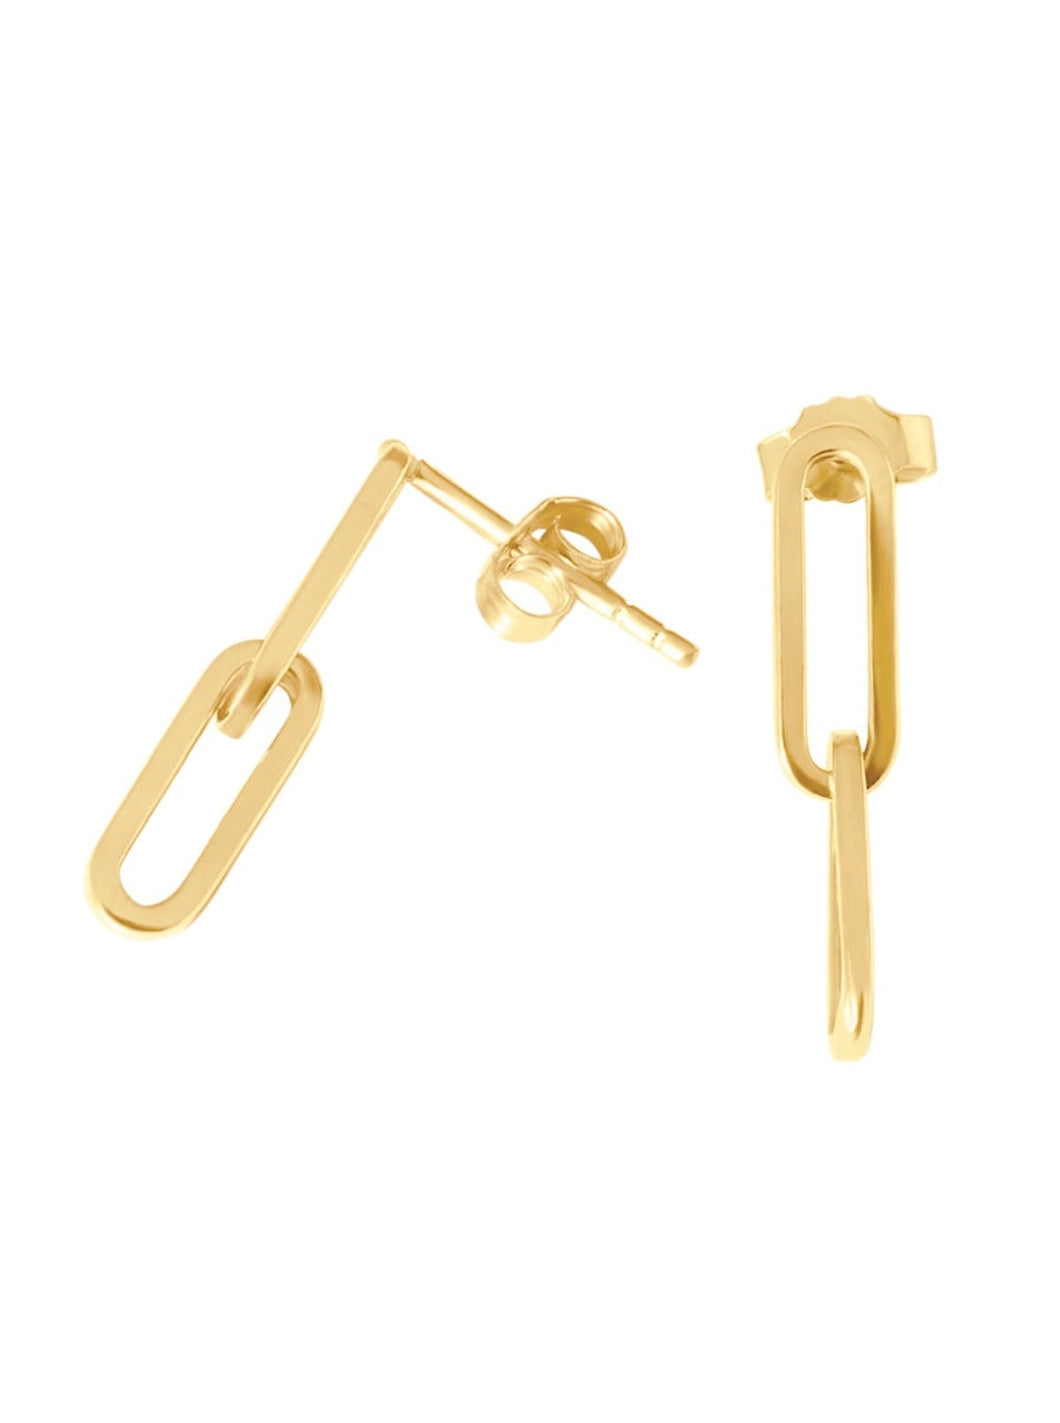 14k Gold Paper Clip earrings